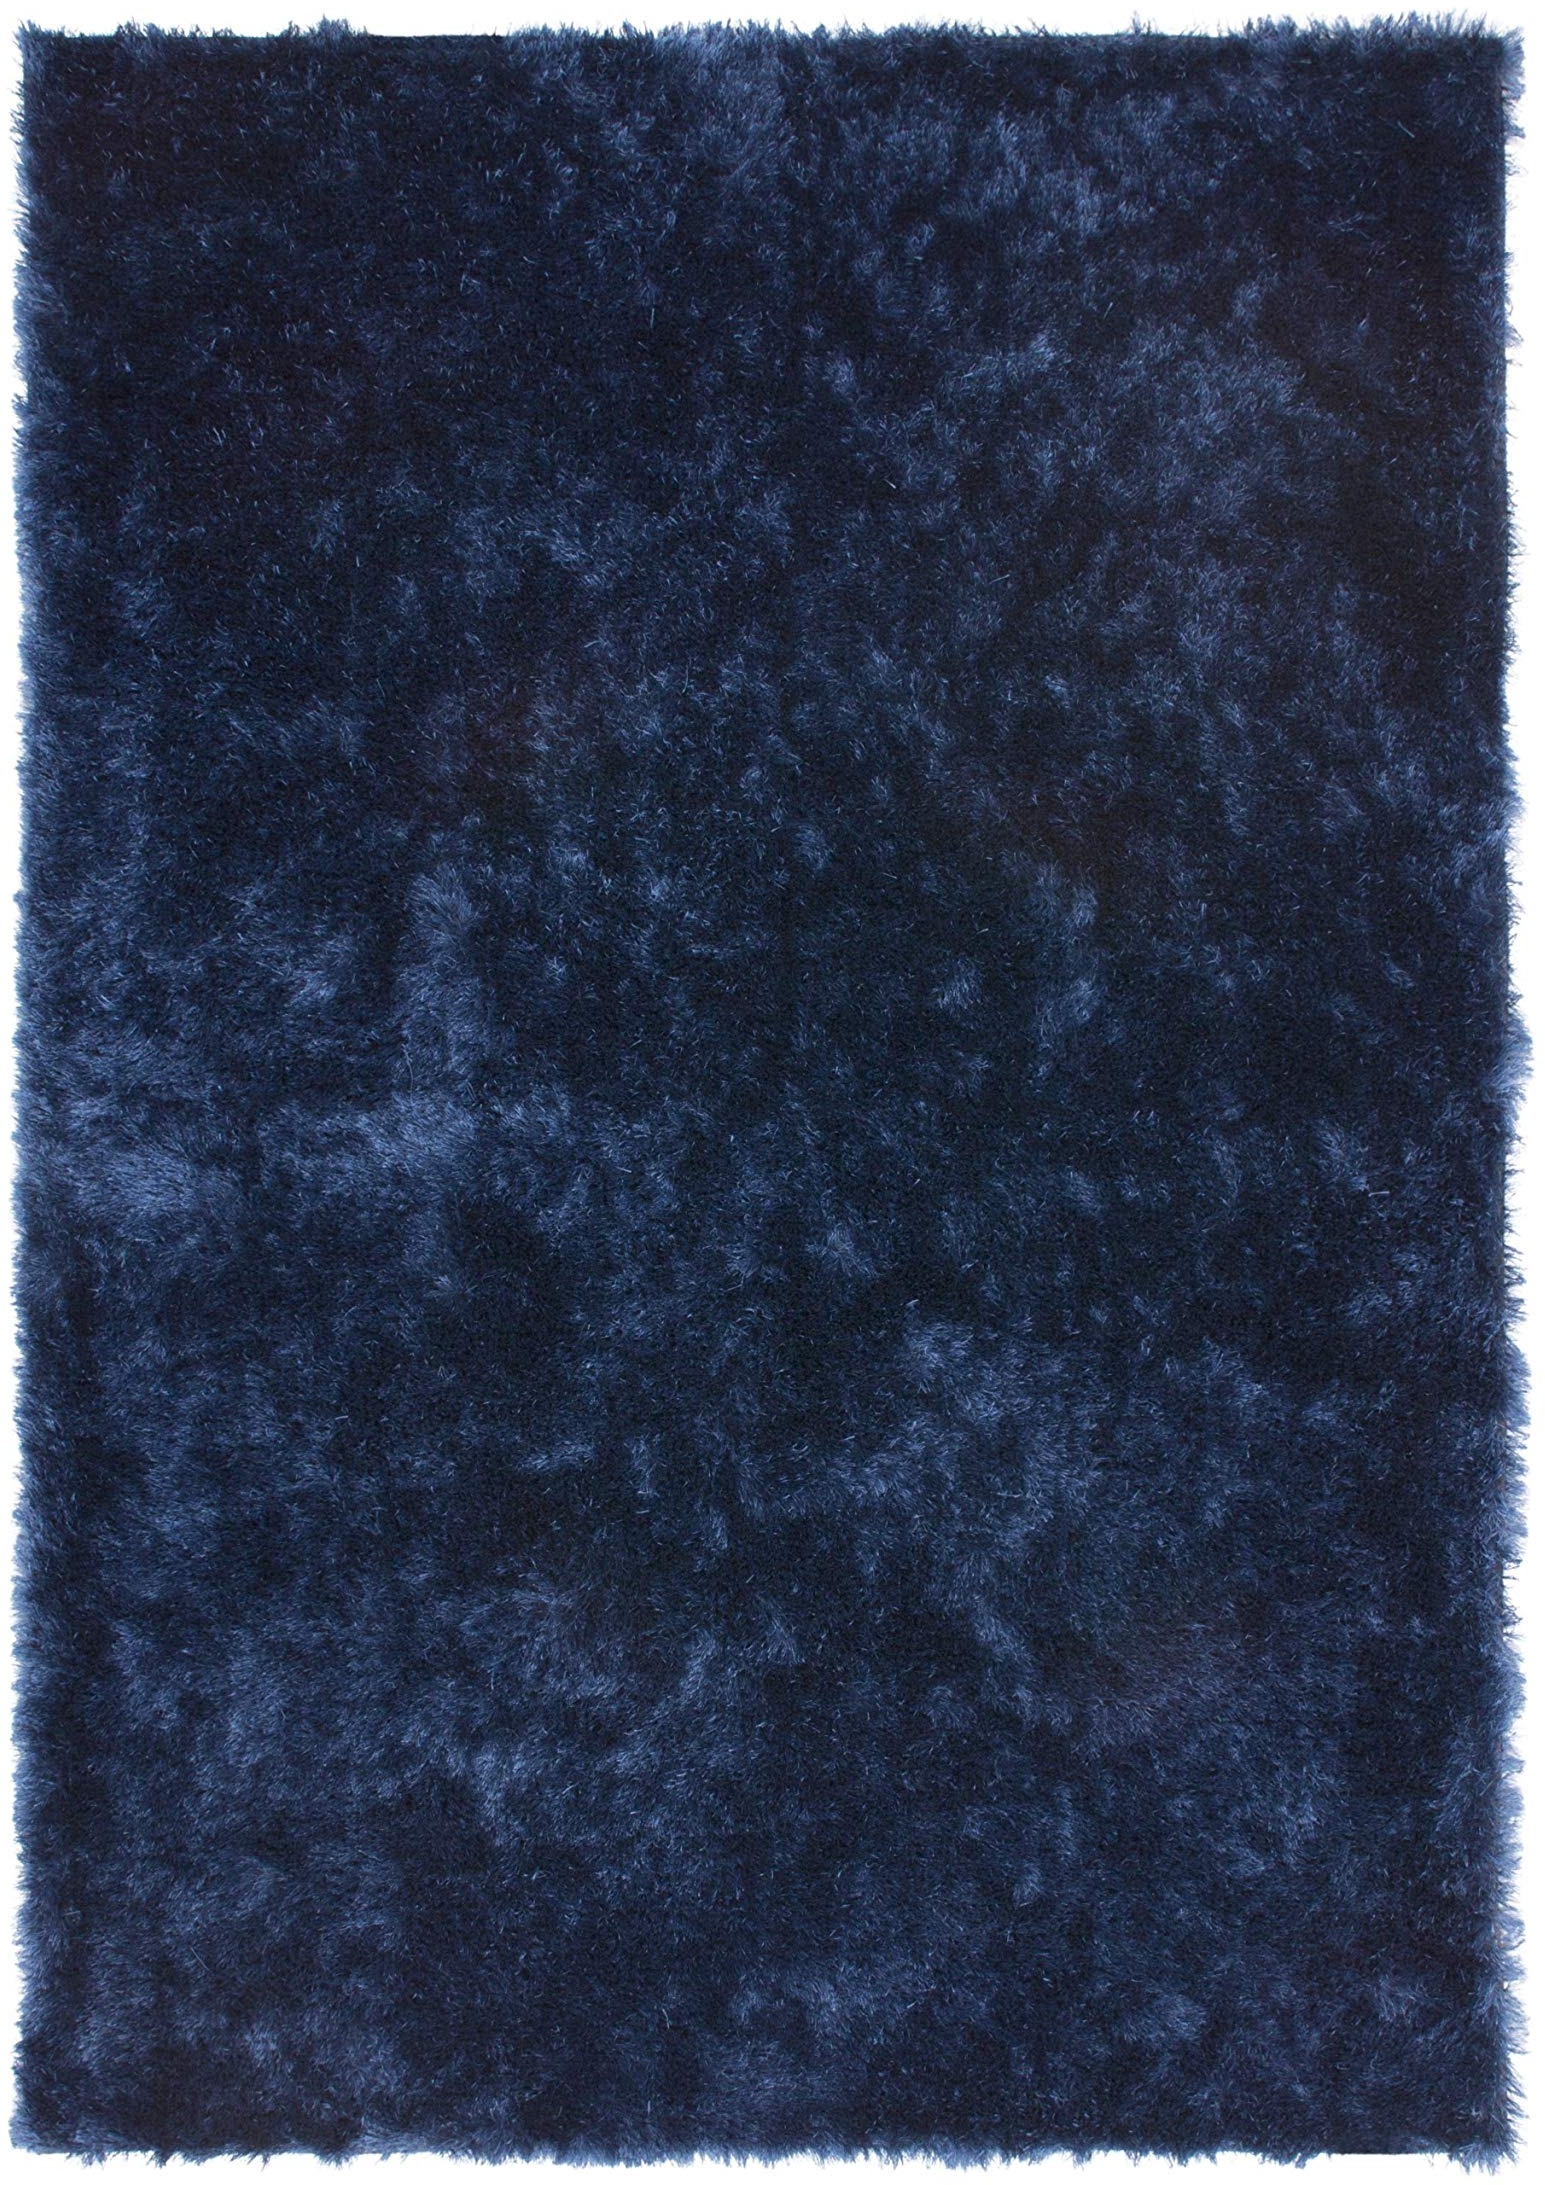 Lalee Weicher Hochflorteppich, Blau, 120 x 170 cm